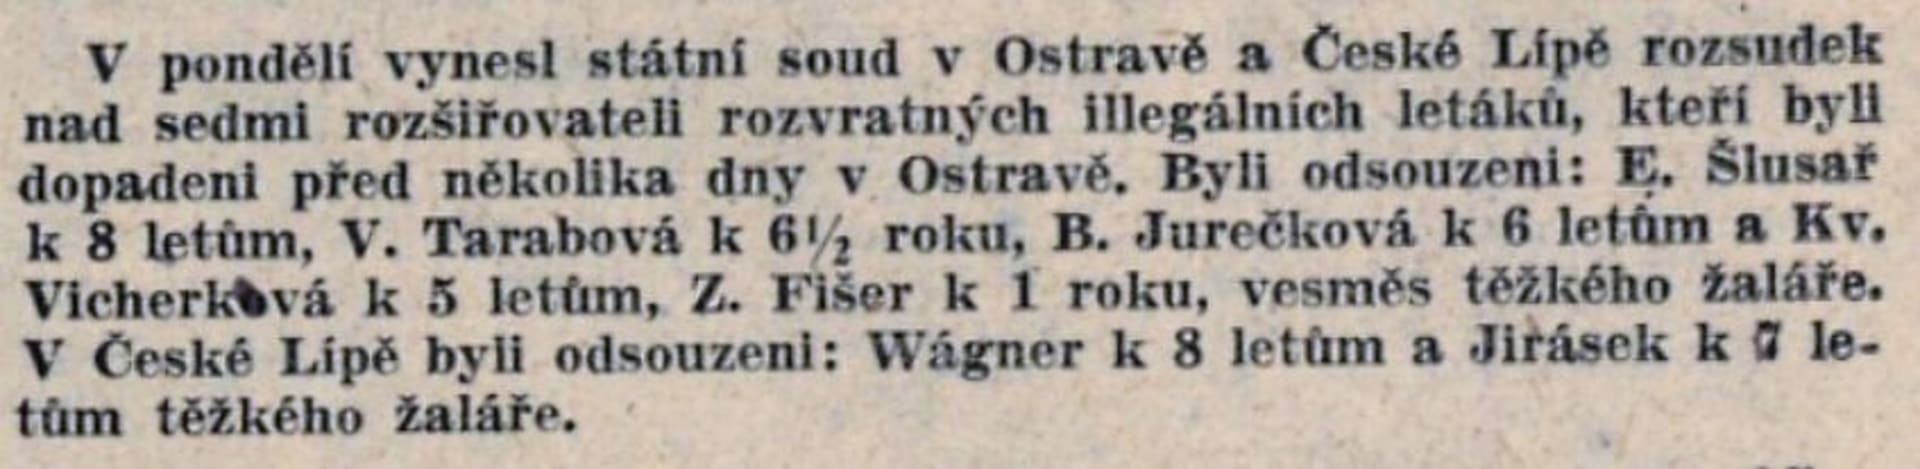 Rudé právo z 21. září 1948 informuje na titulní straně o procesu s Emilem Šlusařem a dalšími obviněnými, kteří šířili protirežimní letáky.